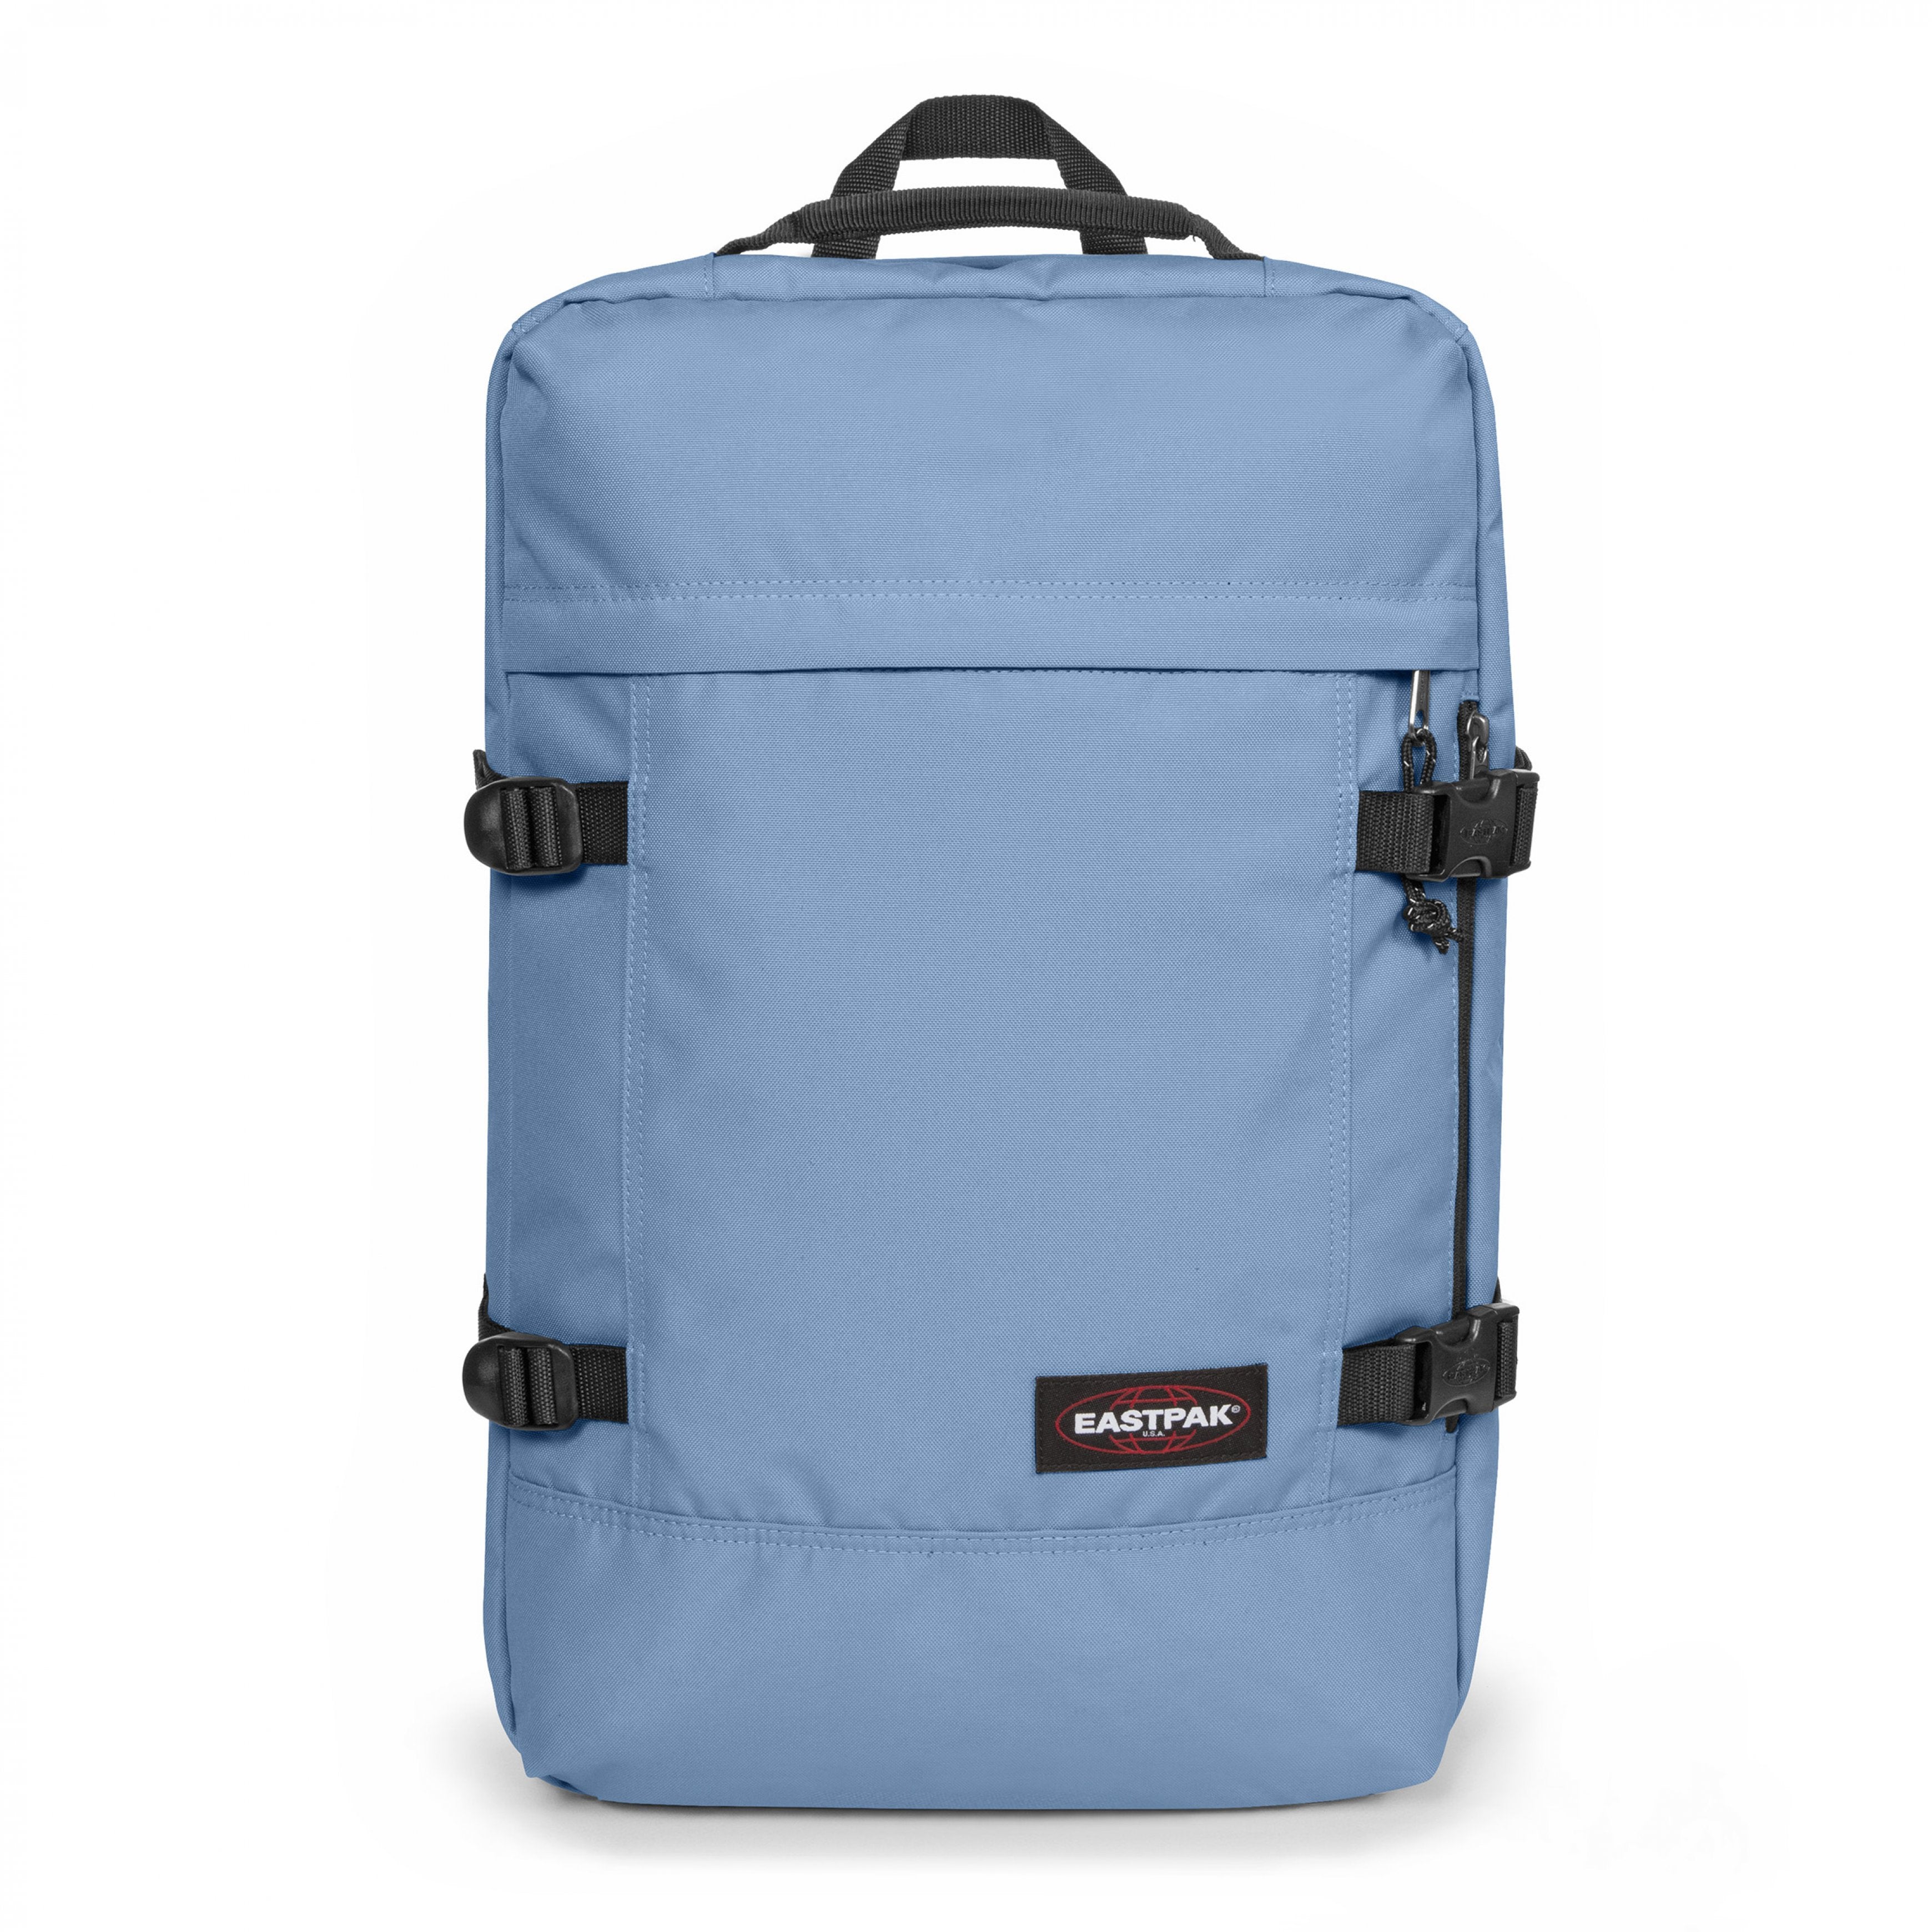 EASTPAK-Travelpack-Large backpack with laptop sleeve-Charming Blue-EK0A5BBR5D51